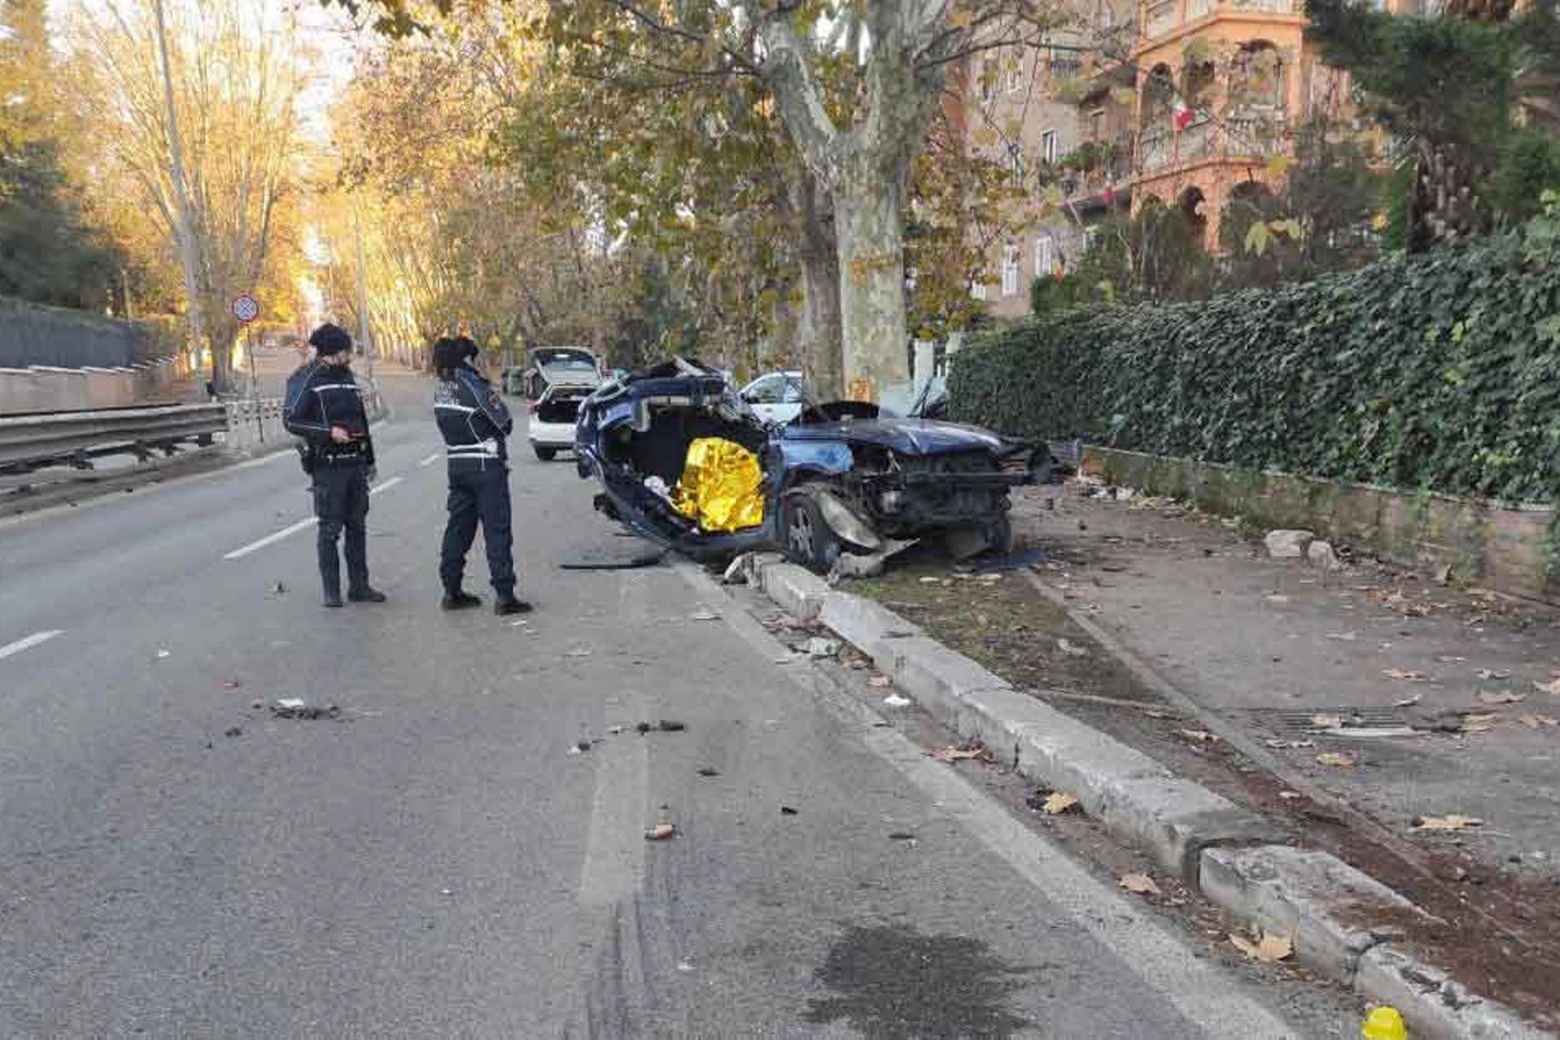 Roma incidente stradale mortale: l'auto accortocciata dove hanno perso la vita due sorelle